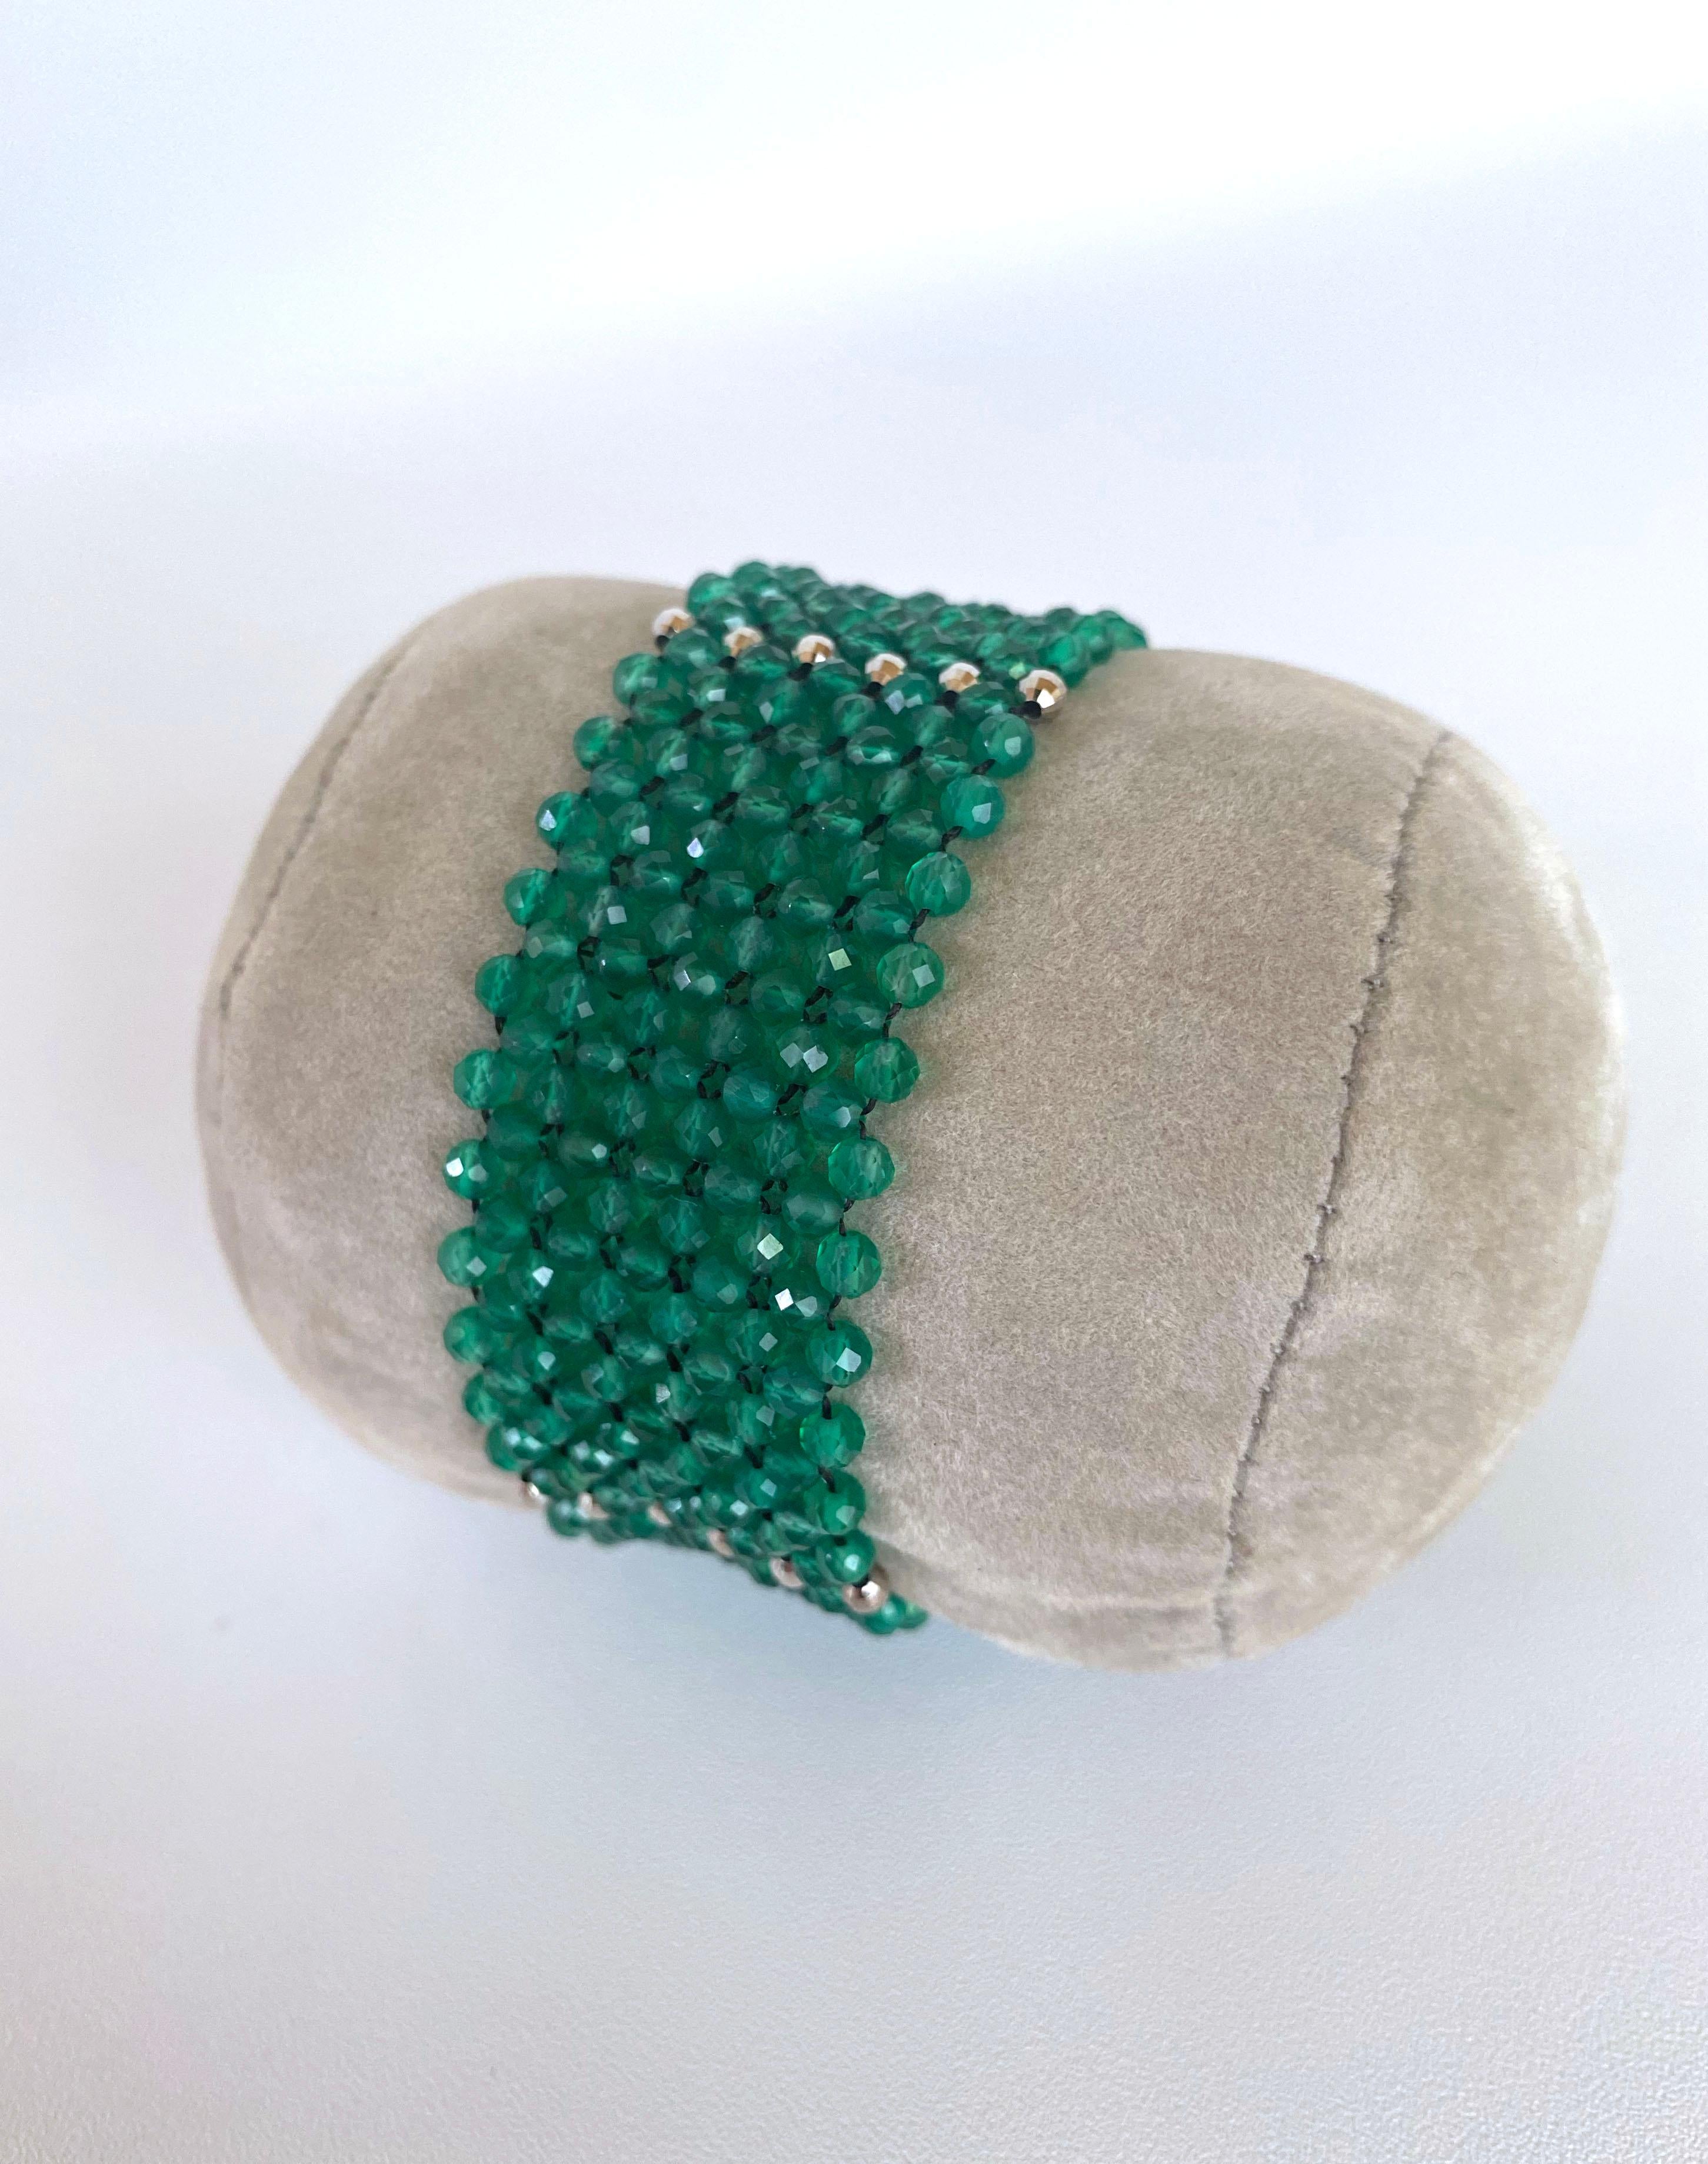 Magnifique pièce tissée et réalisée à la main par Marina J. Ce brillant bracelet présente d'étonnantes perles d'Onyx vert à facettes qui affichent une grande translucidité et un grand éclat, parfaitement ornées d'accents en argent sterling plaqué